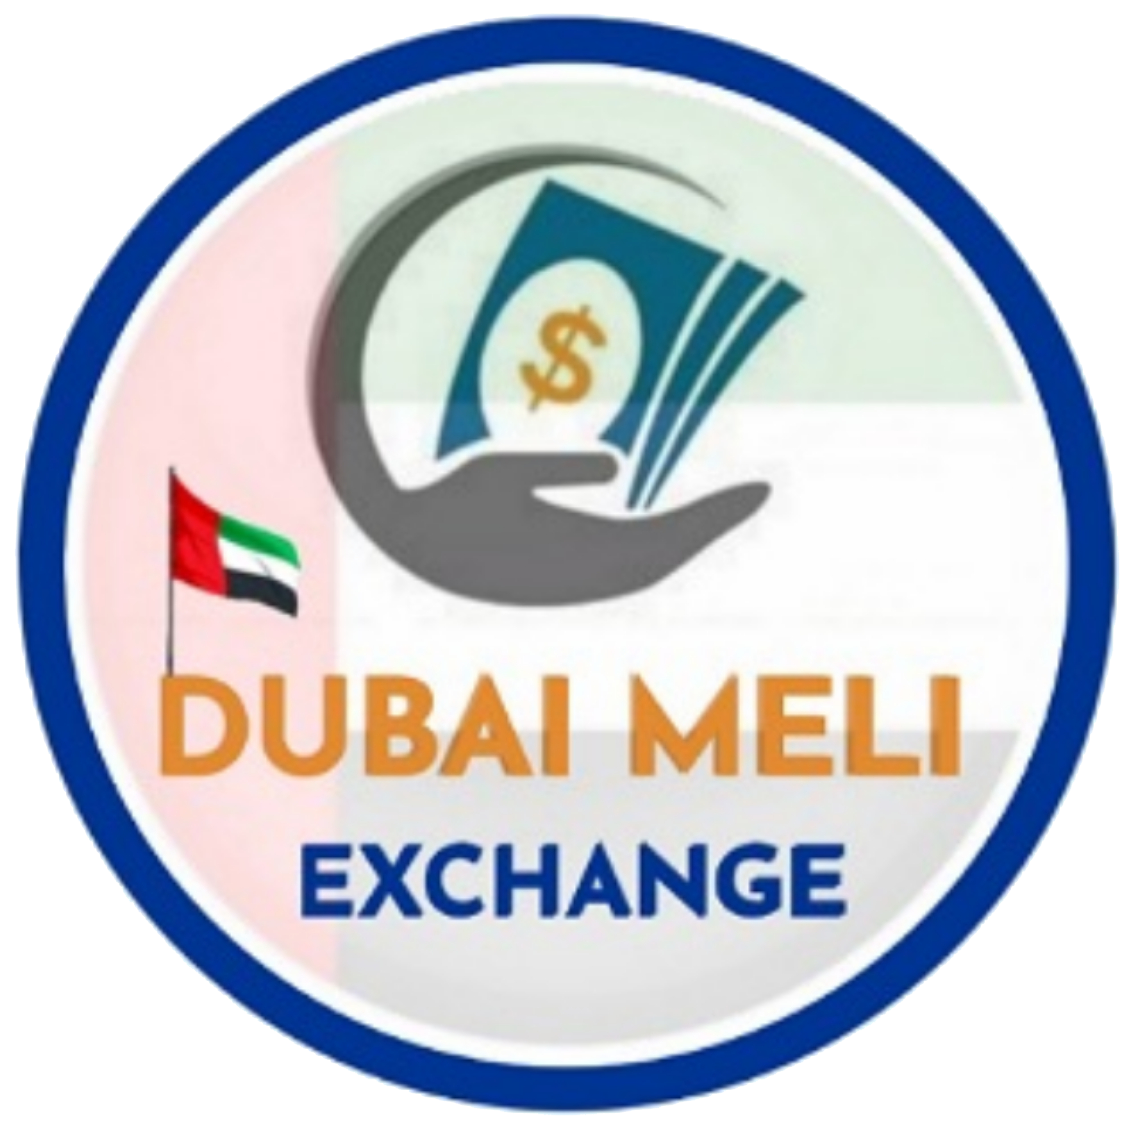 صرافی ملی دبی | DUBAI MELI EXCHANGE